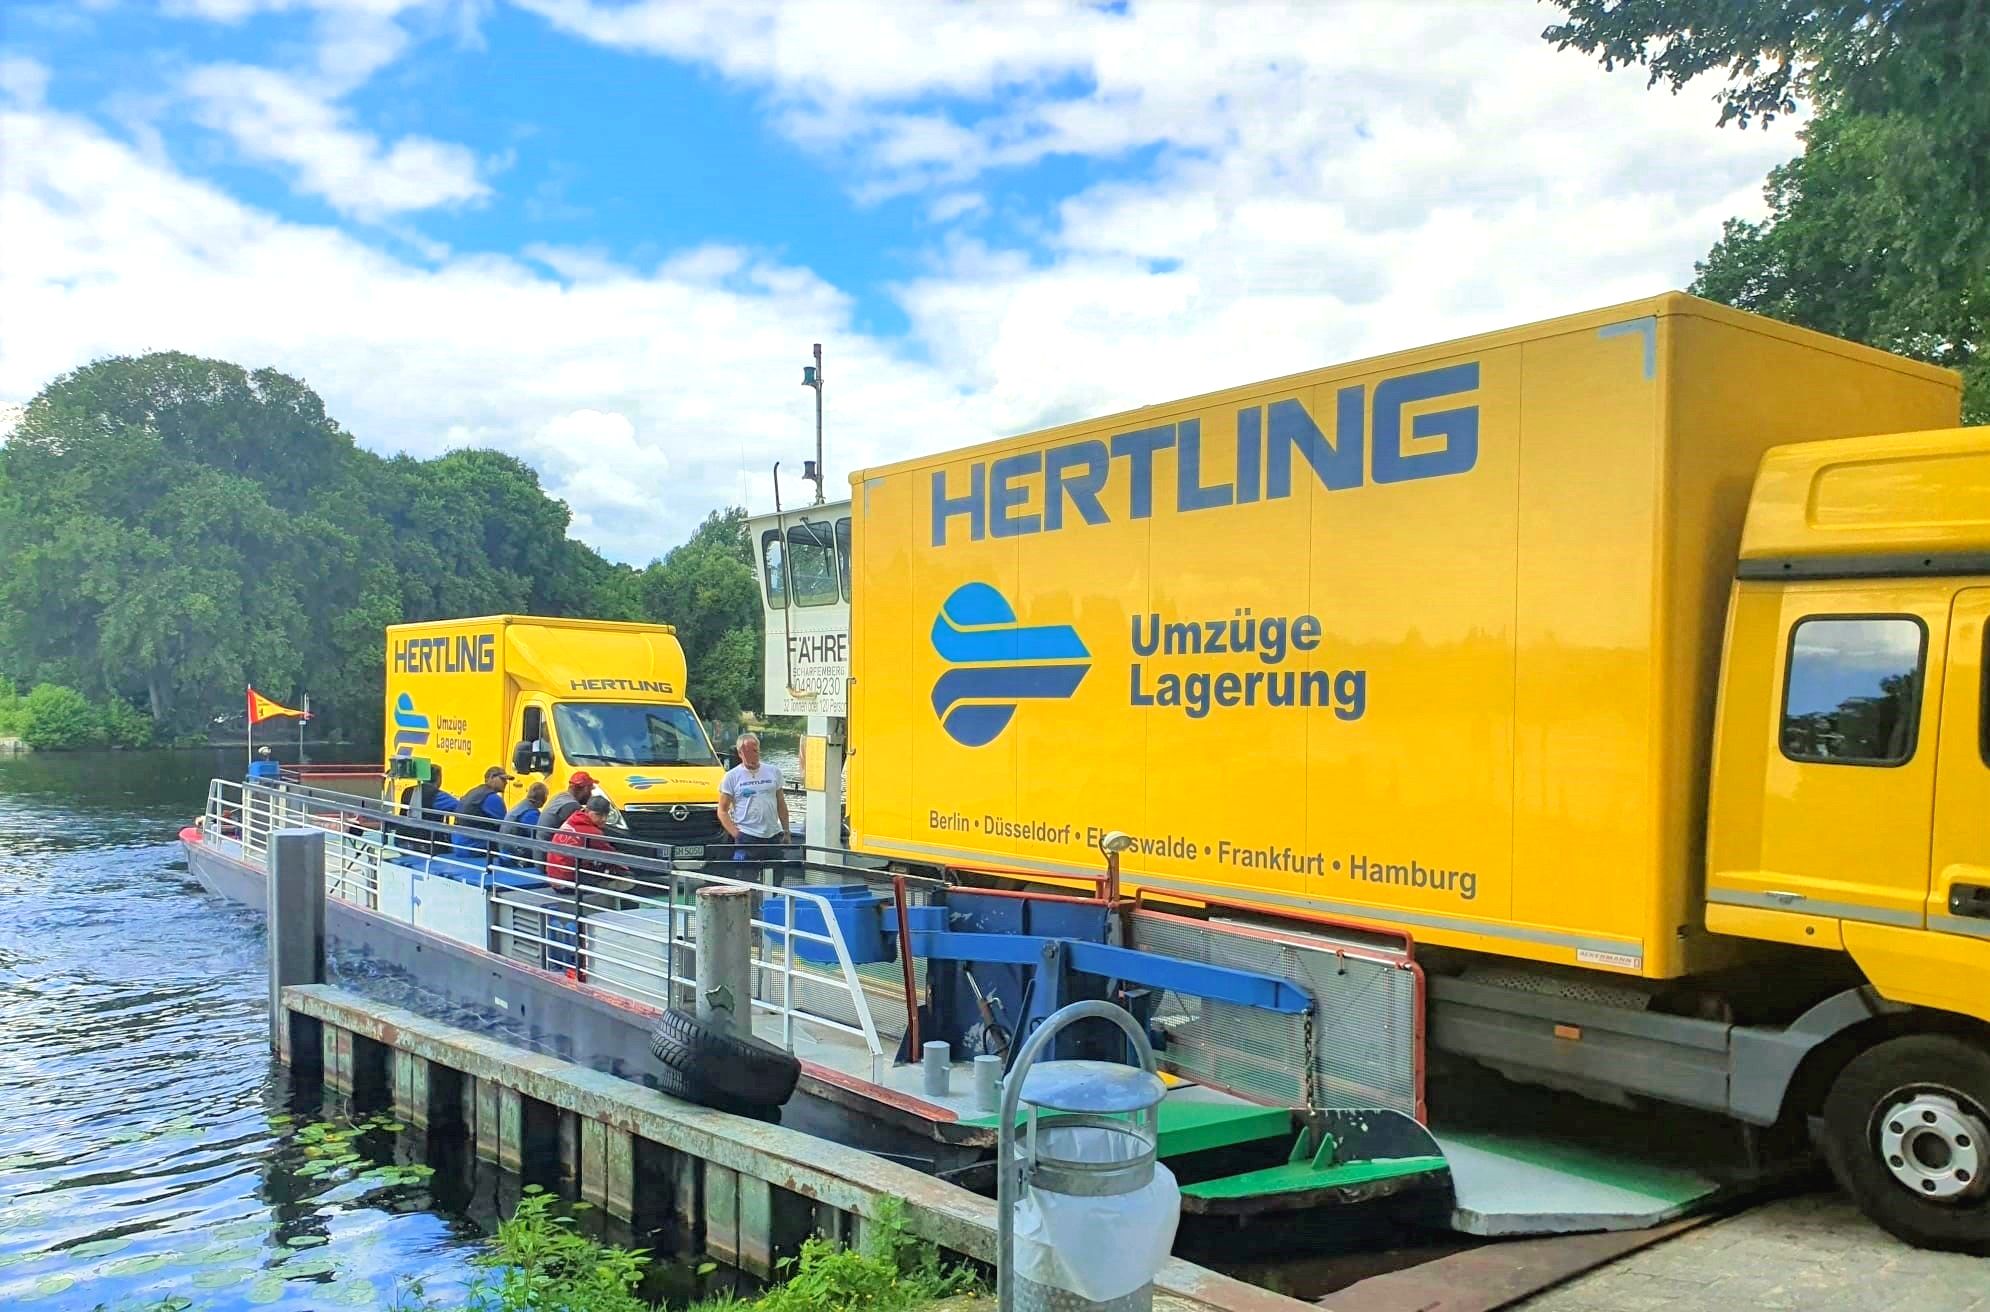 HERTLING move across Lake Berlin